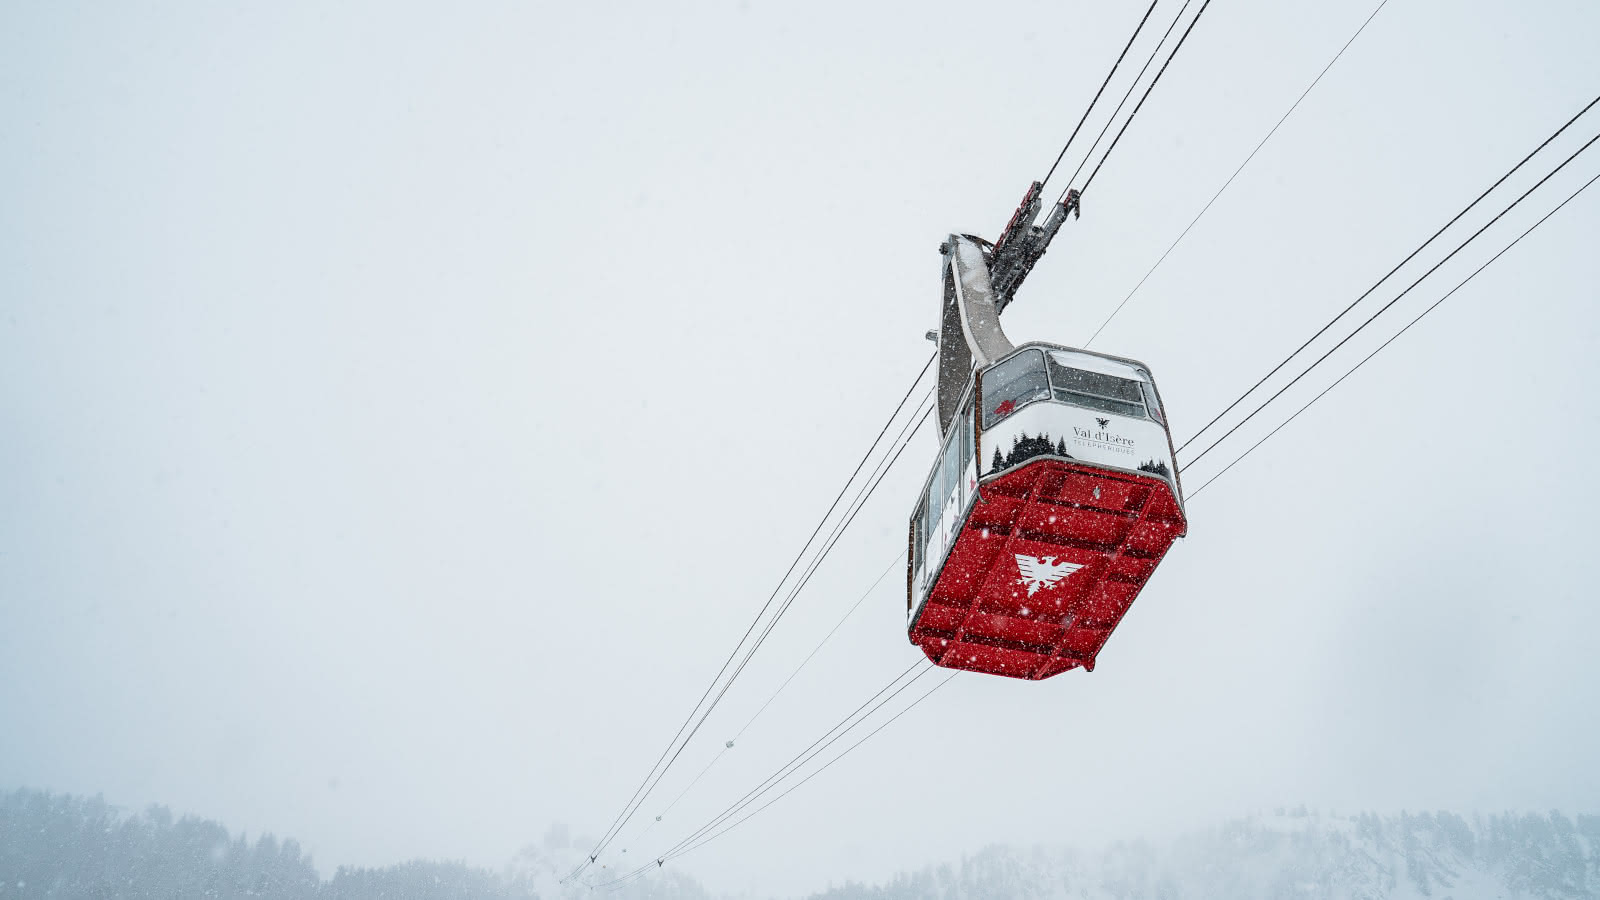 Une vue impressionnant en contre bas d'une cabine du téléphérique du Fornet. Le dessous rouge de la cabine avec son logo blanc ressort dans le paysage blanc de l'hiver.